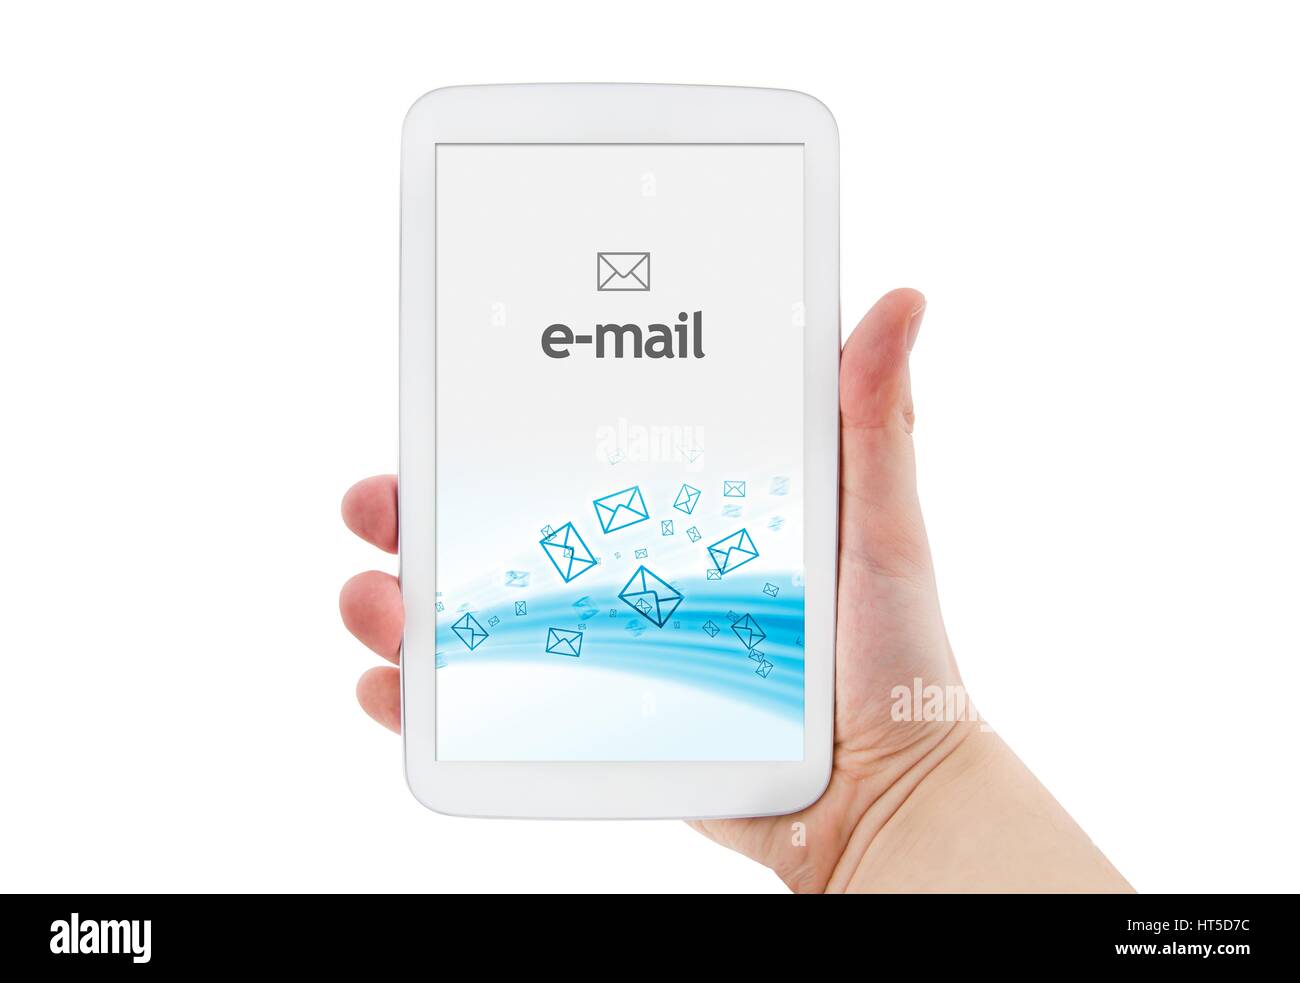 e-mail mobile app on modern white tablet Stock Photo